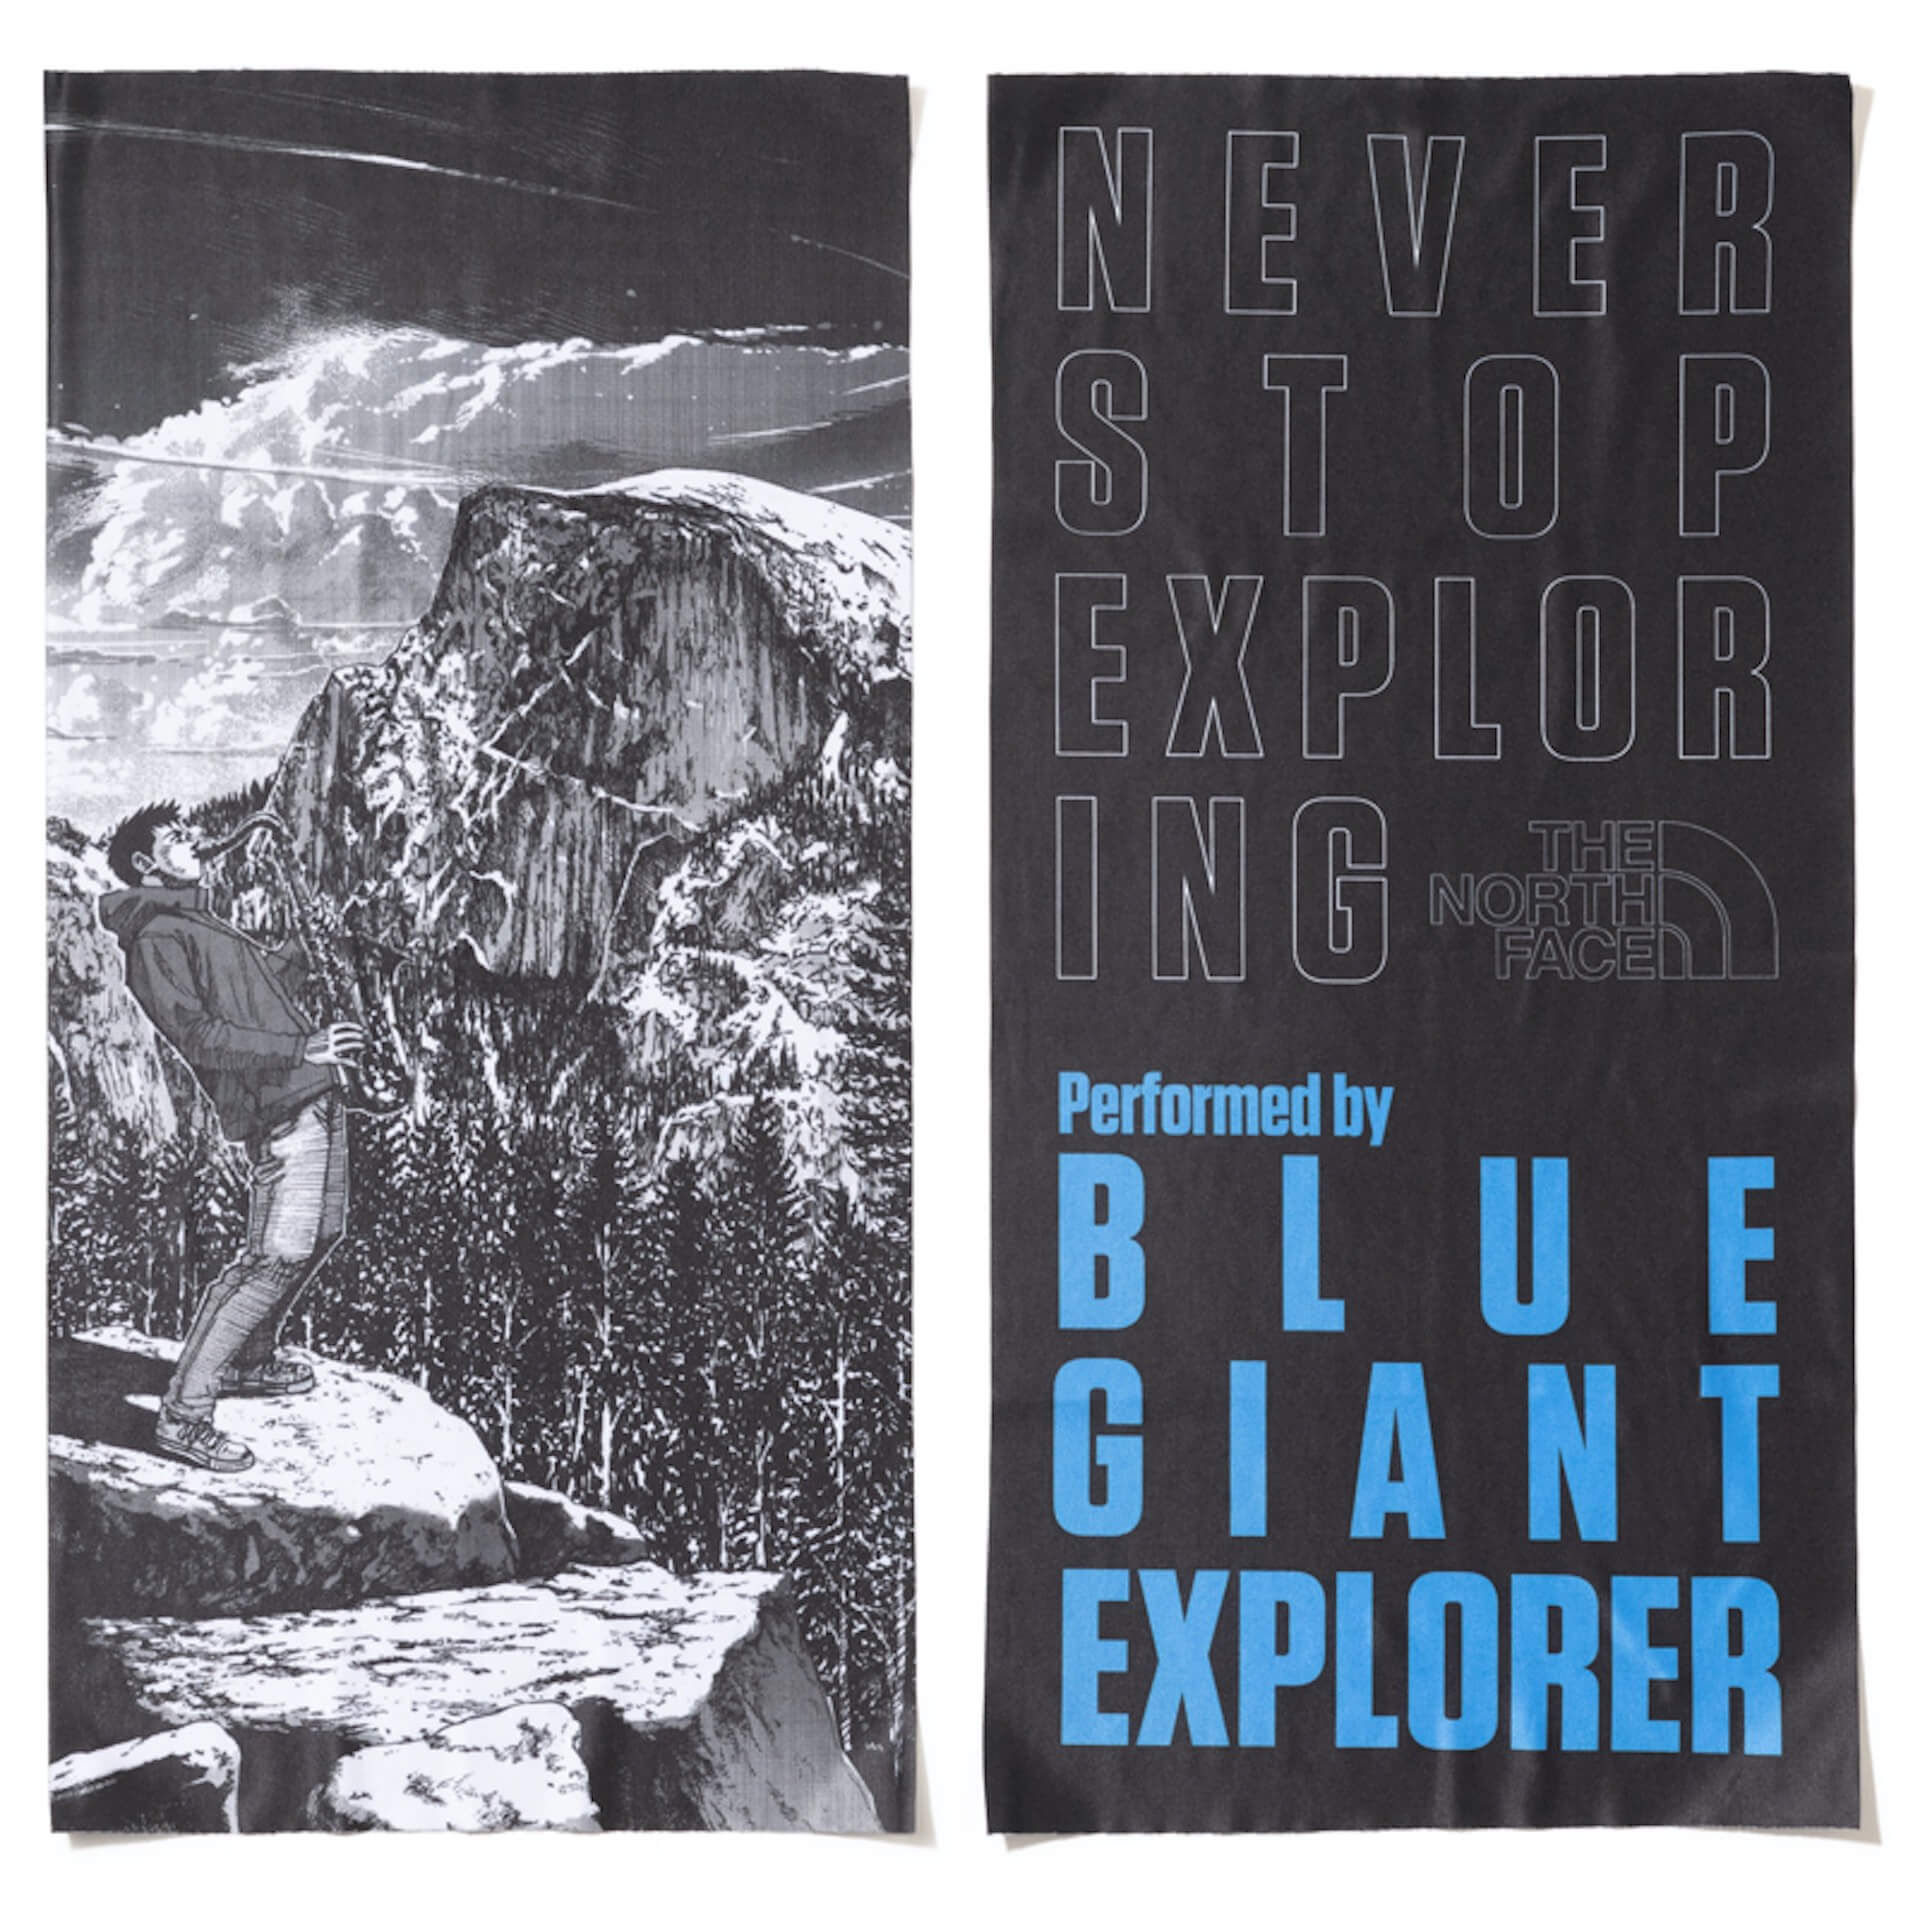 石塚真一が描く Blue Giant Explorer とthe North Faceが再びコラボ フェイスマスクとしても使える特製バンド第2弾が登場 Qetic